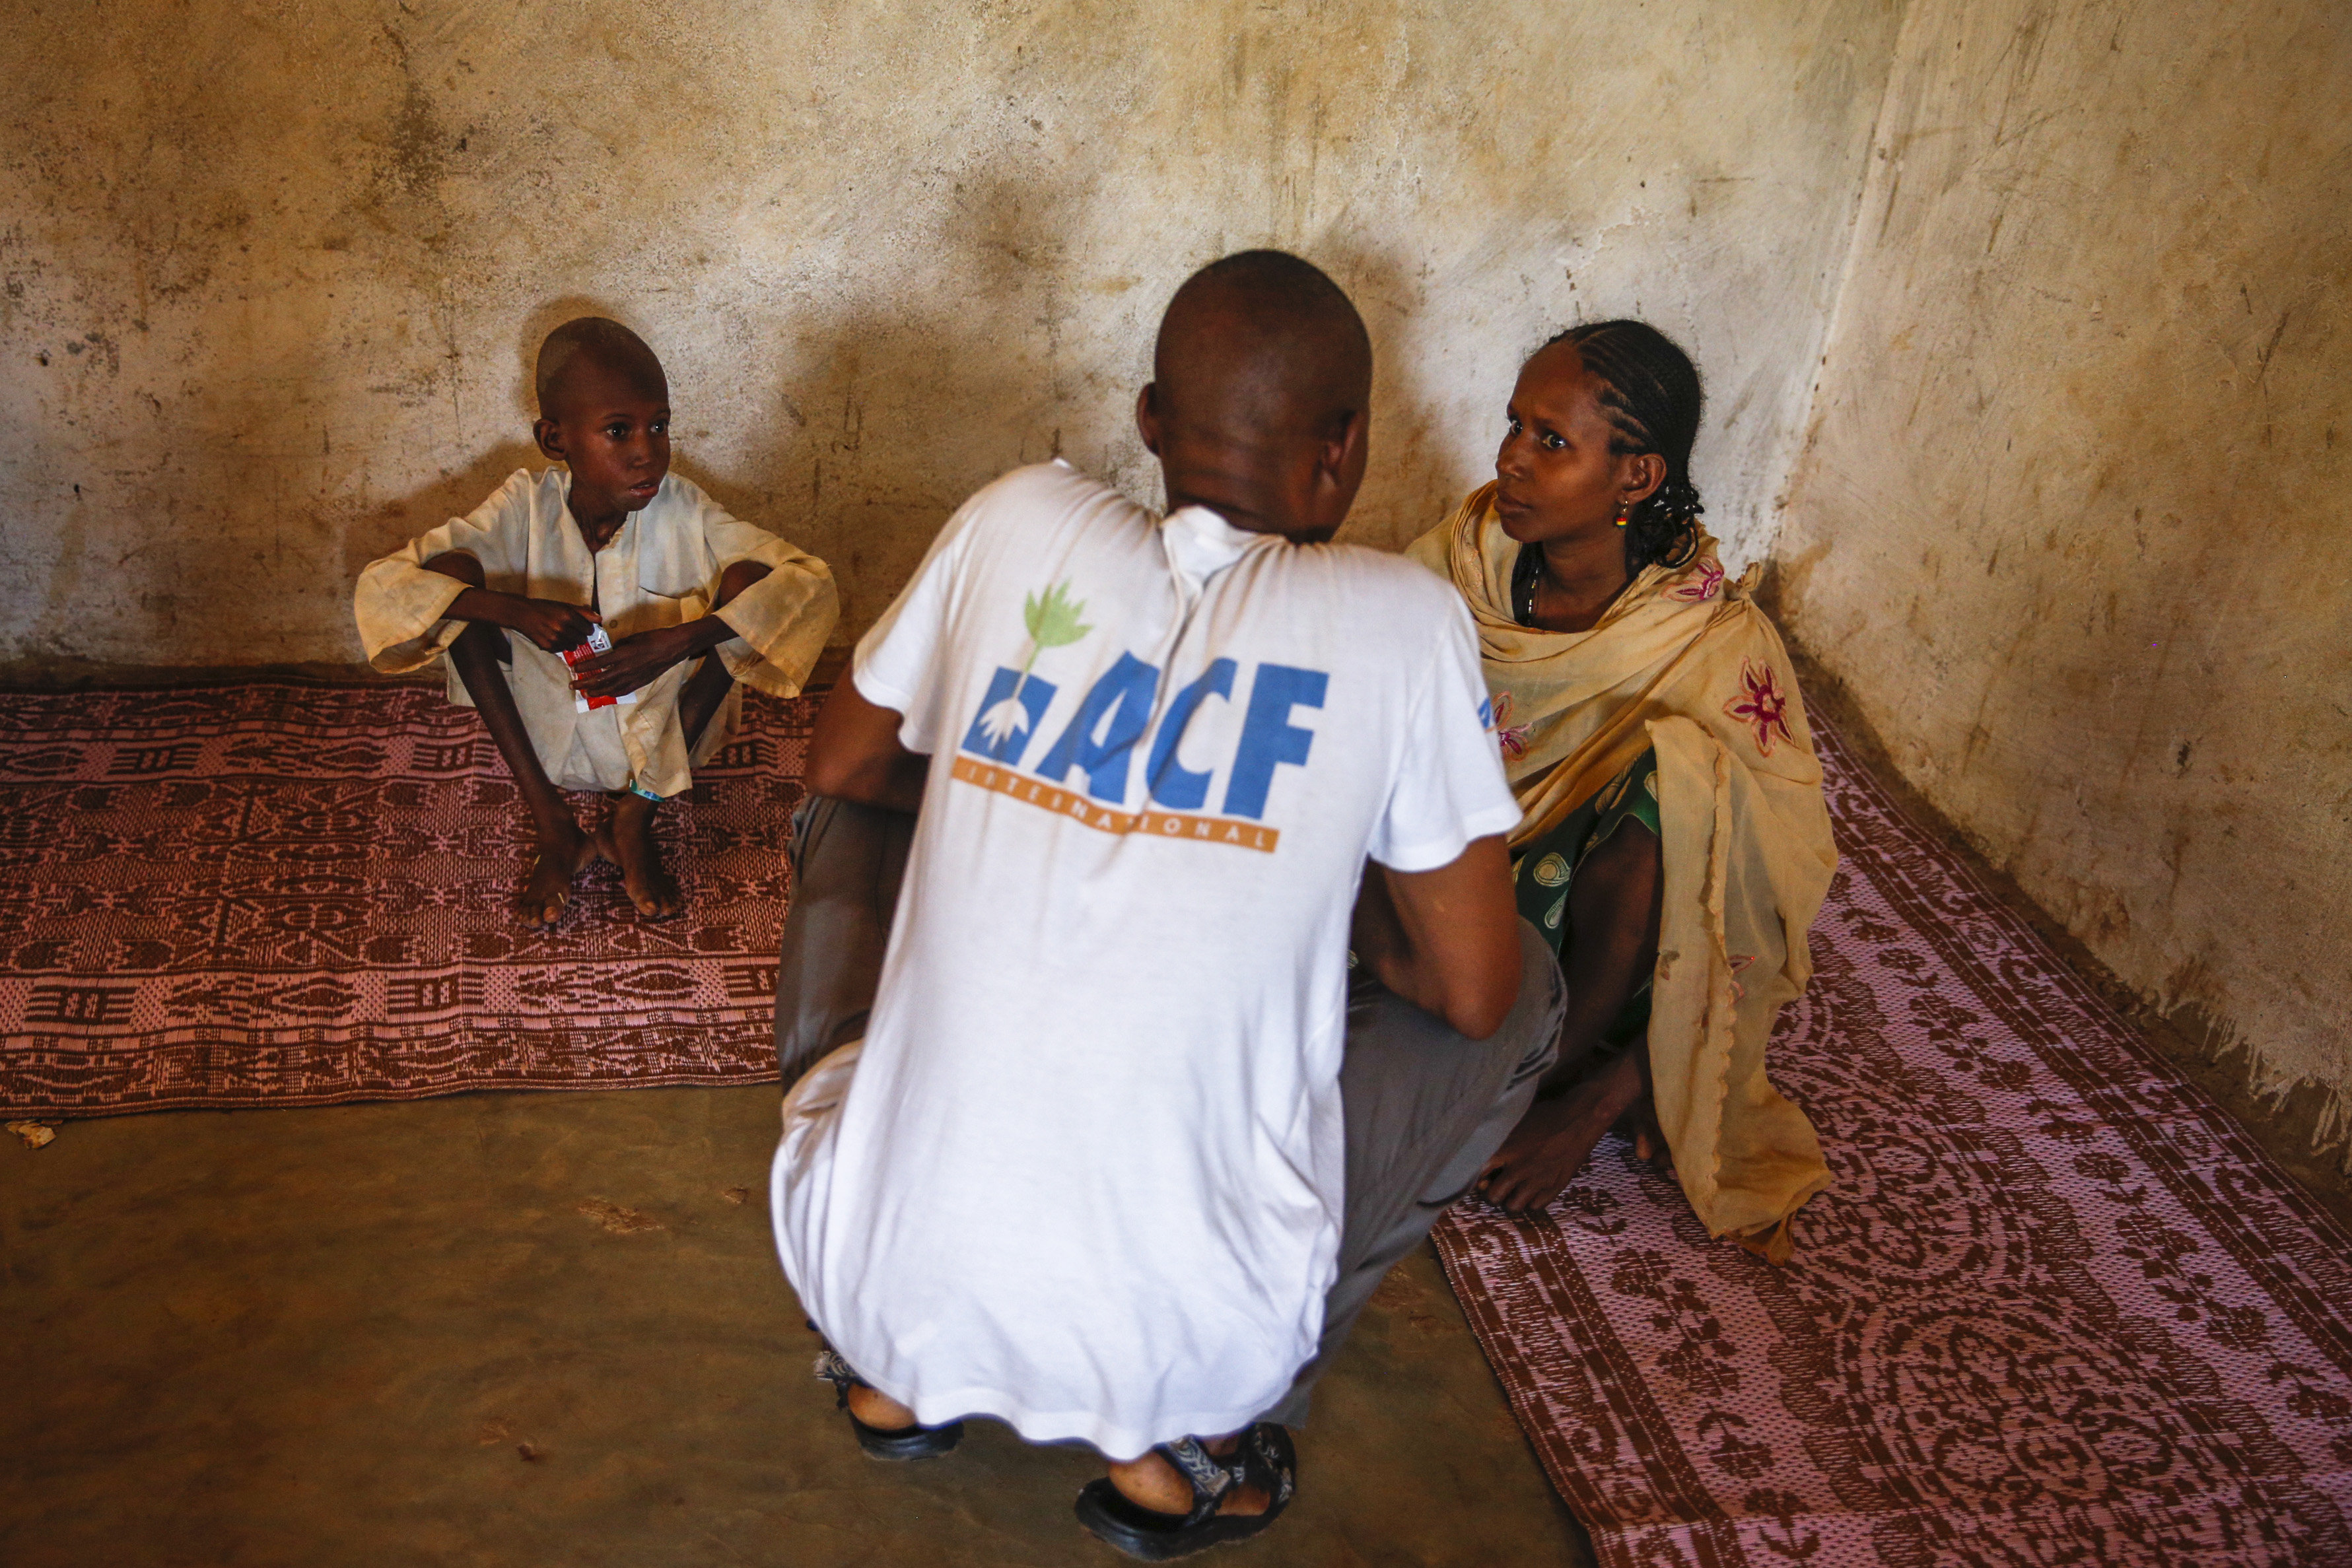 En République centrafricaine, Action contre la Faim a déployé des programmes d’urgence en nutrition et santé, à Bangui et dans les zones rurales